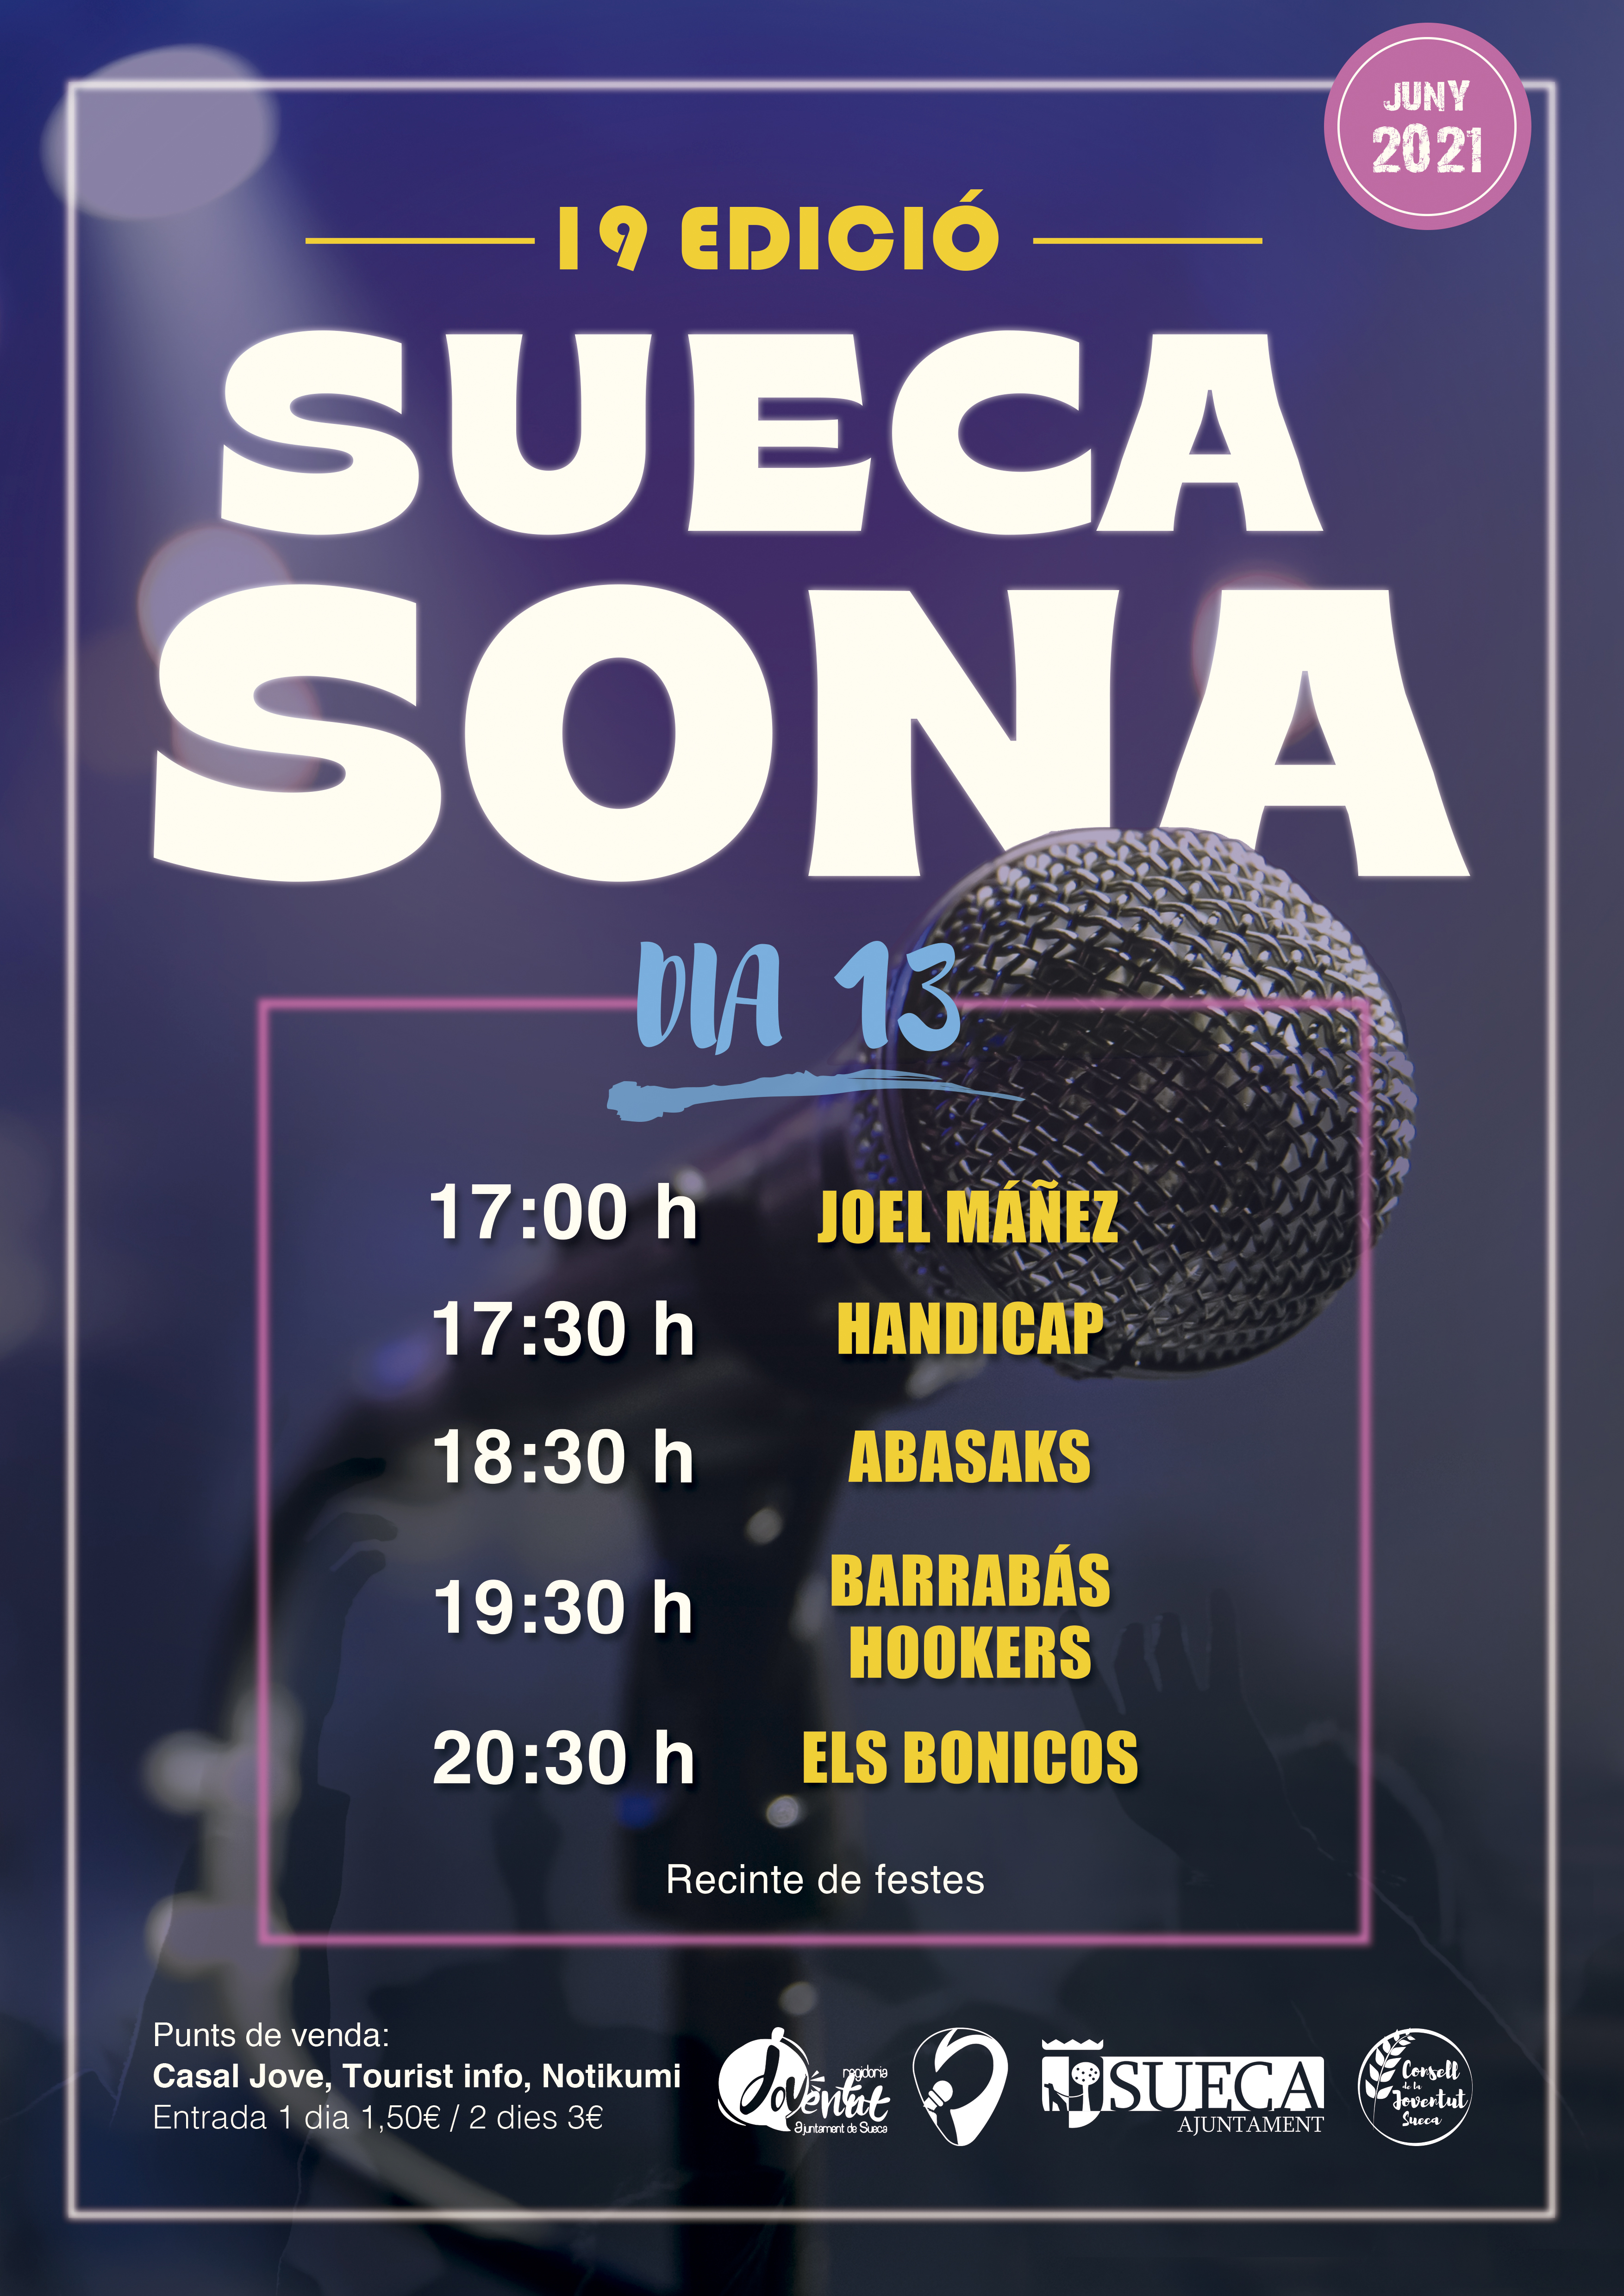 El festival 'Suena Sona' se celebrará los días 12 y 13 de junio